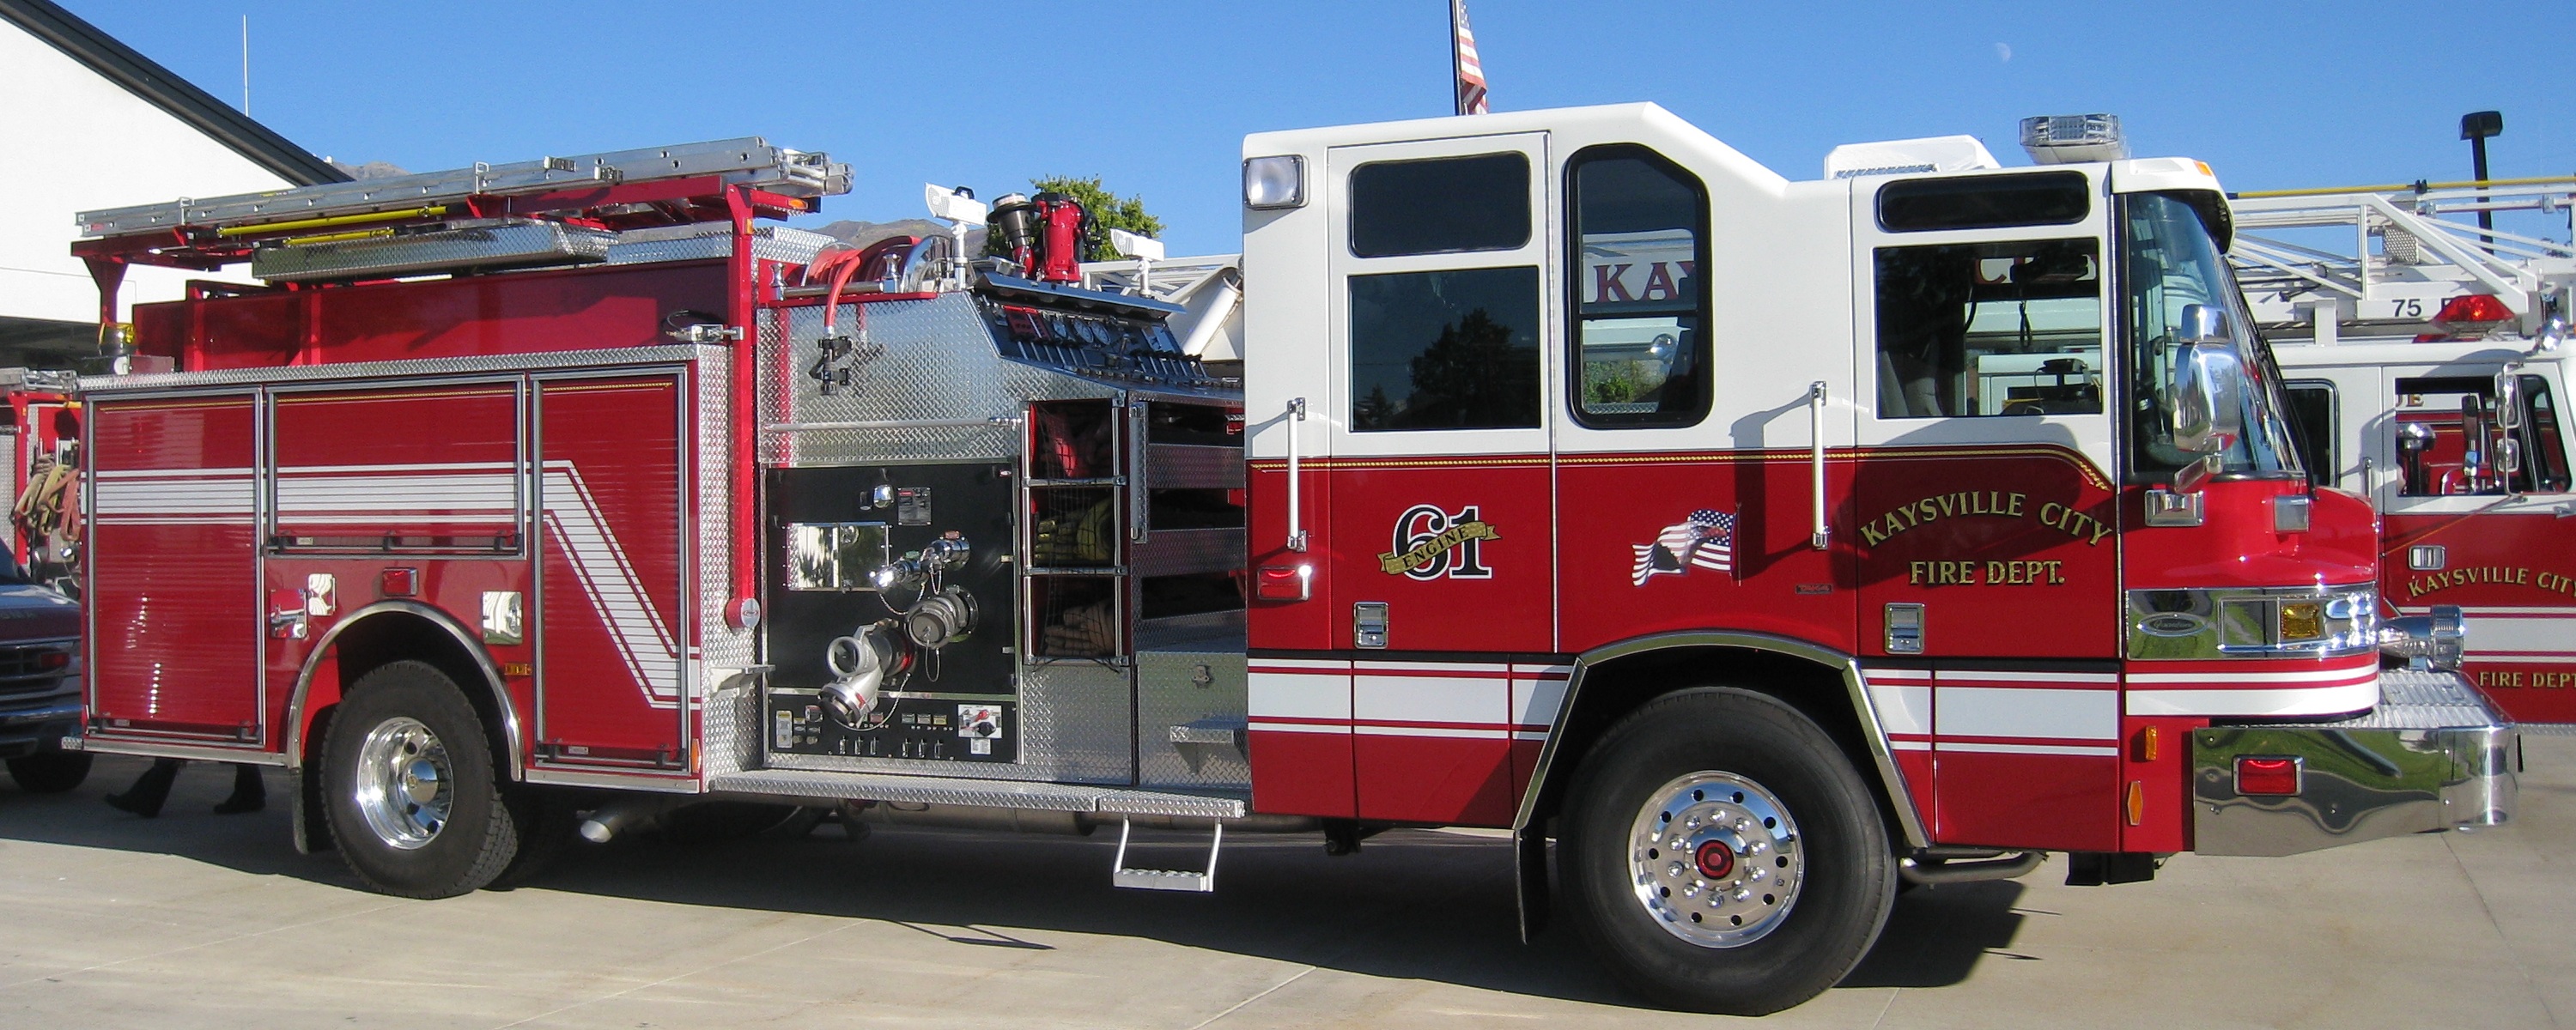 Cool Fire Truck Wallpaper Kaysville City Engine